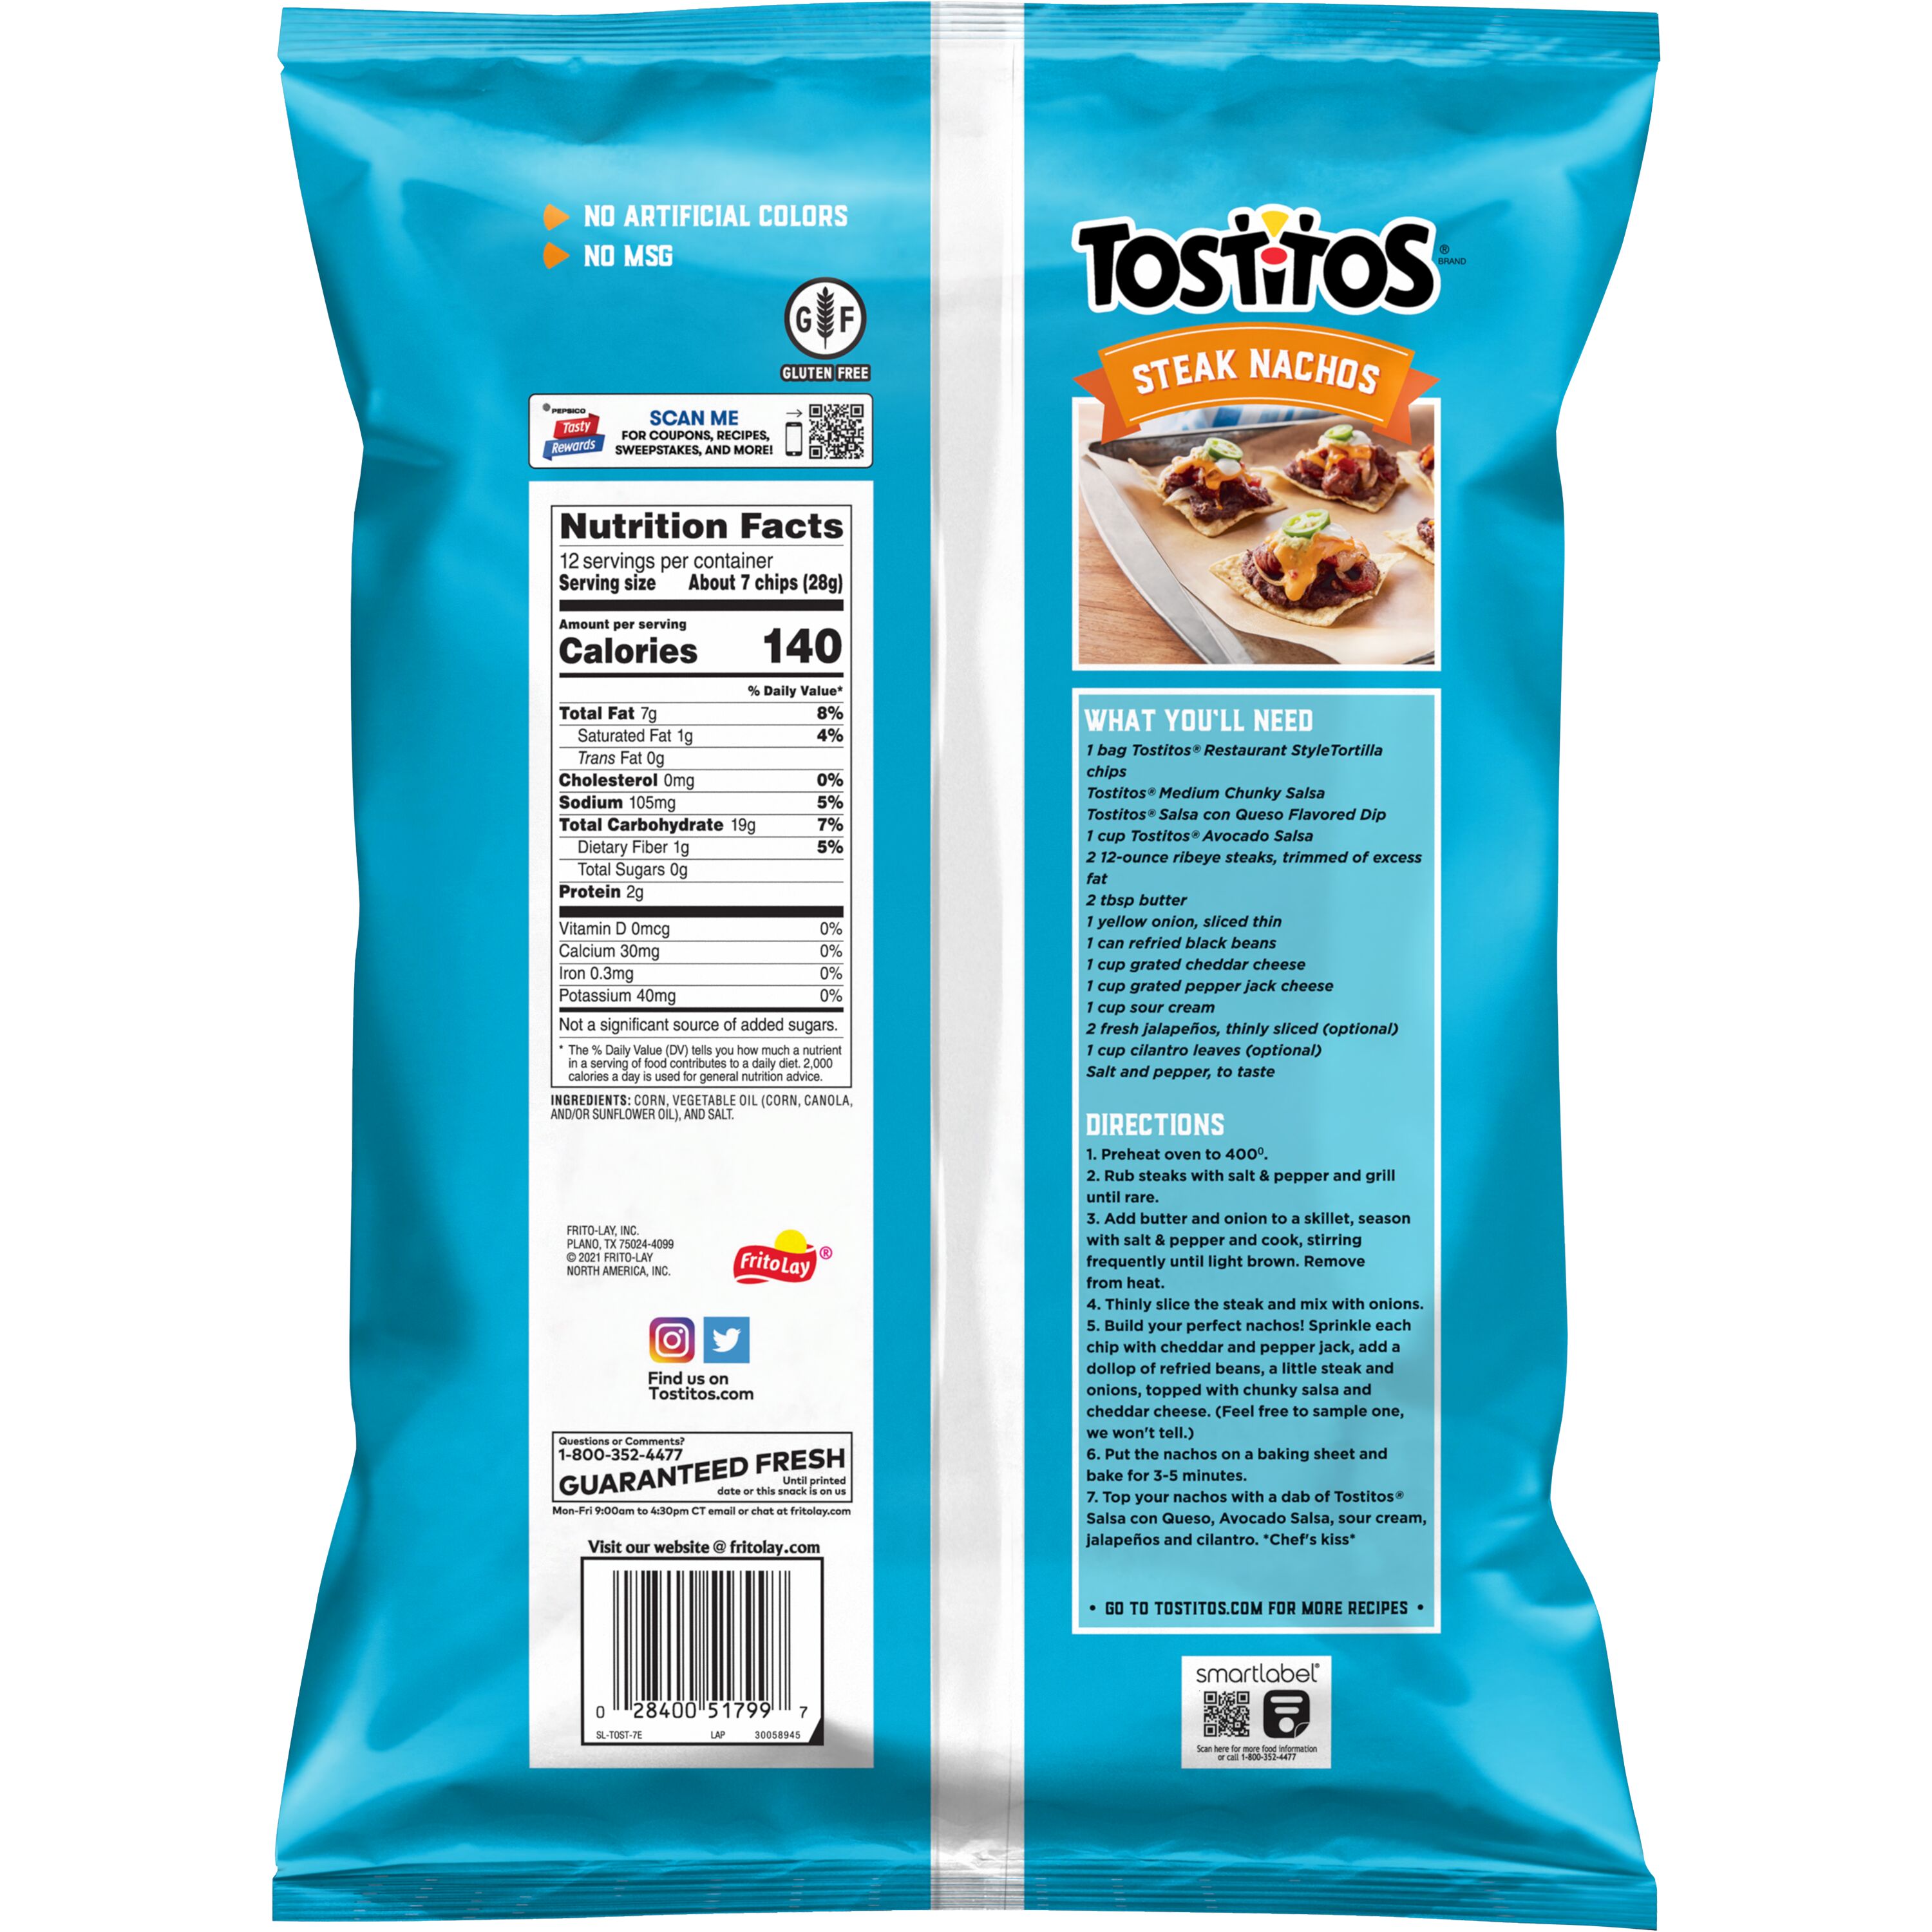 Tostitos Original Restaurant Style Tortilla Chips, Gluten-Free, 12 oz - image 3 of 7